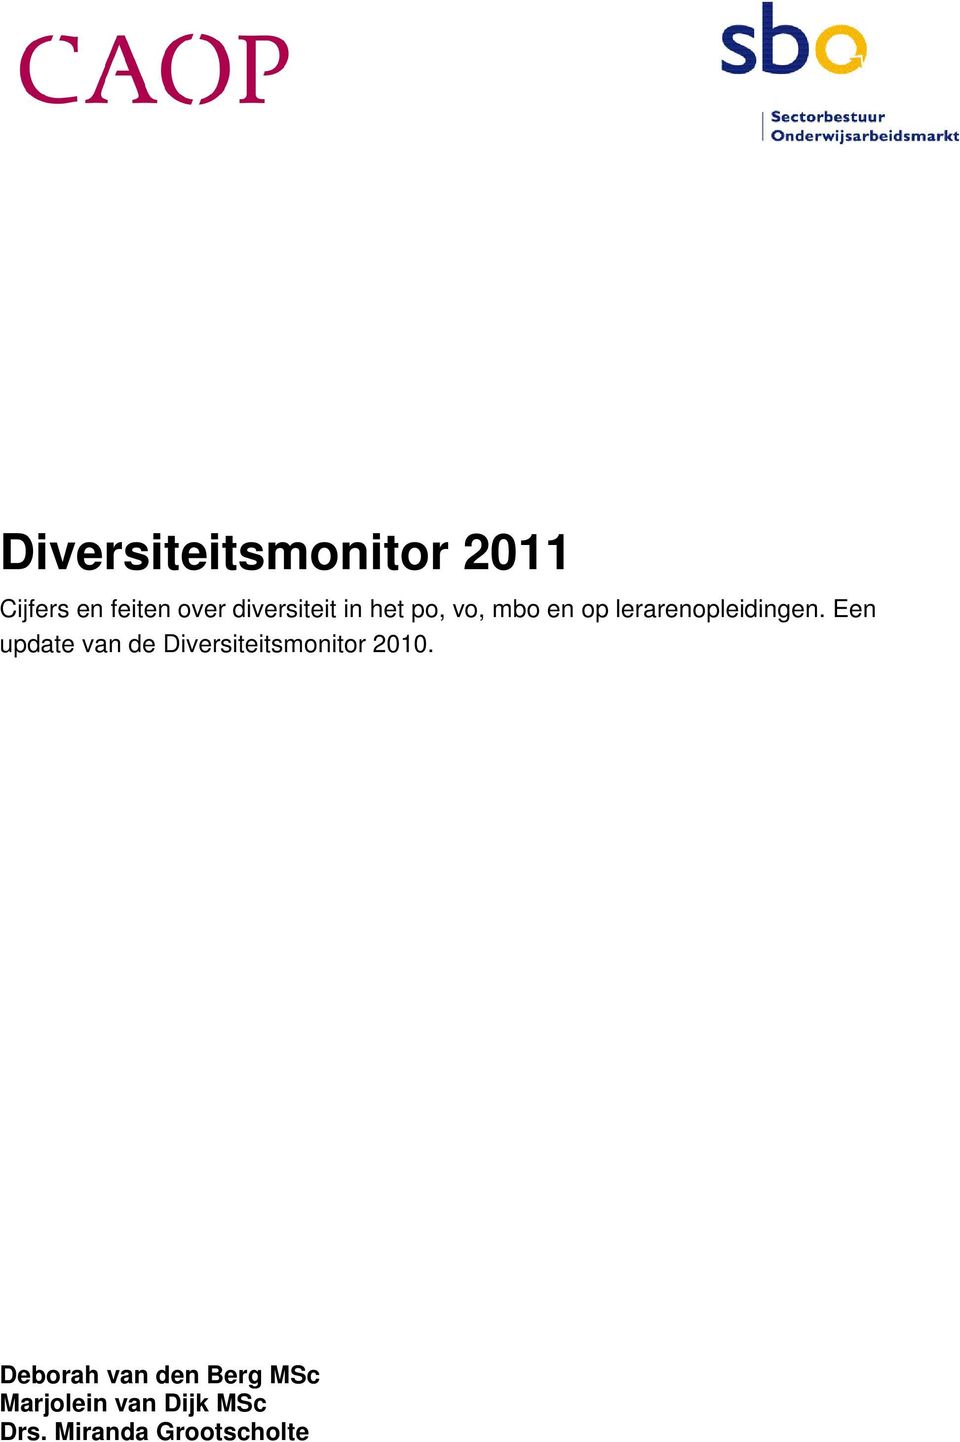 Een update van de Diversiteitsmonitor 2010.